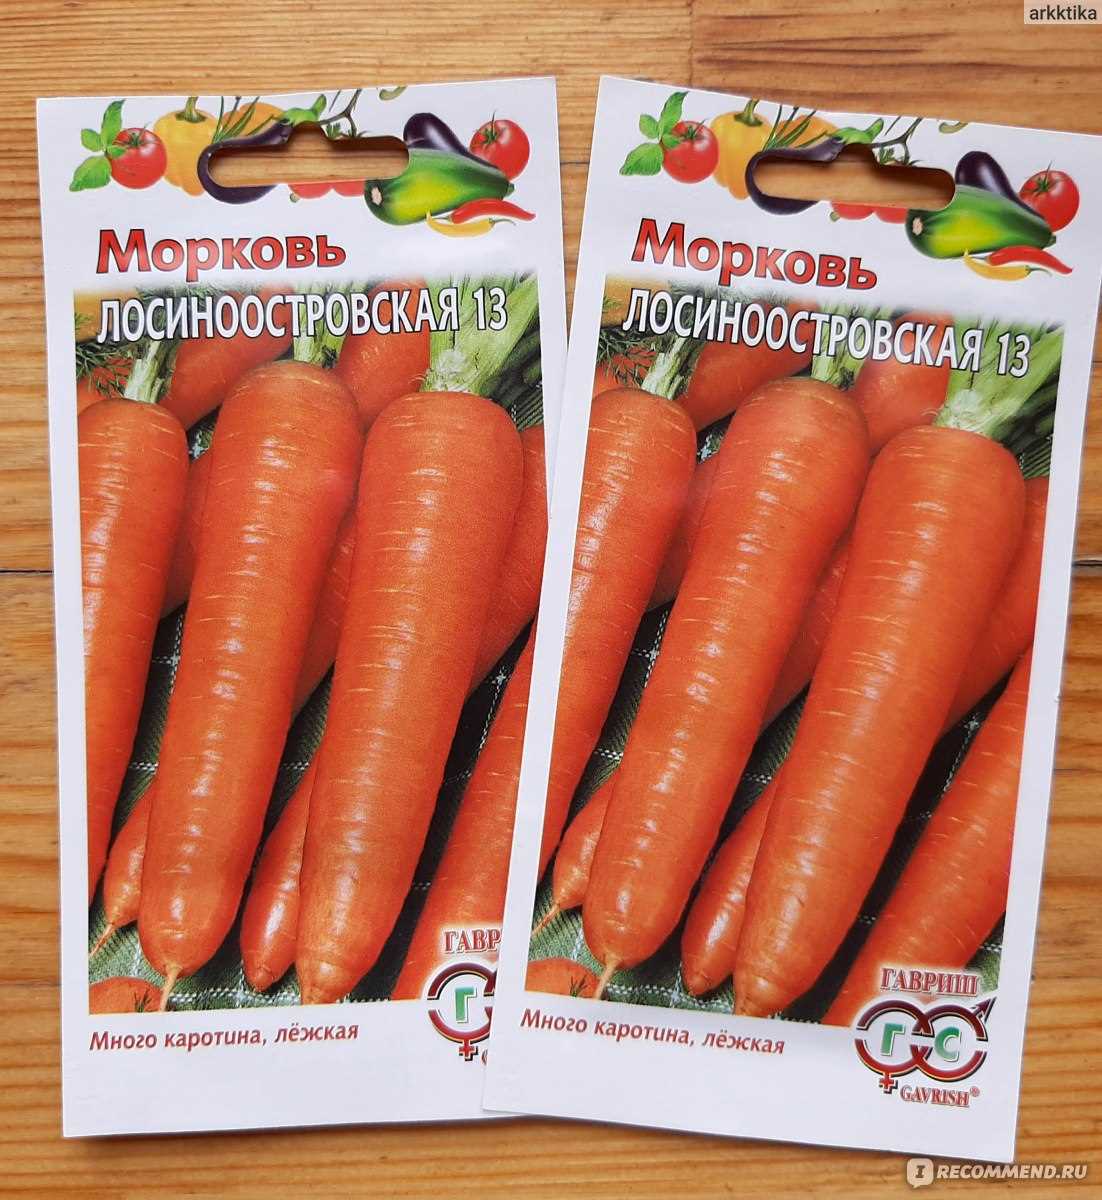 Польза семян моркови для здоровья